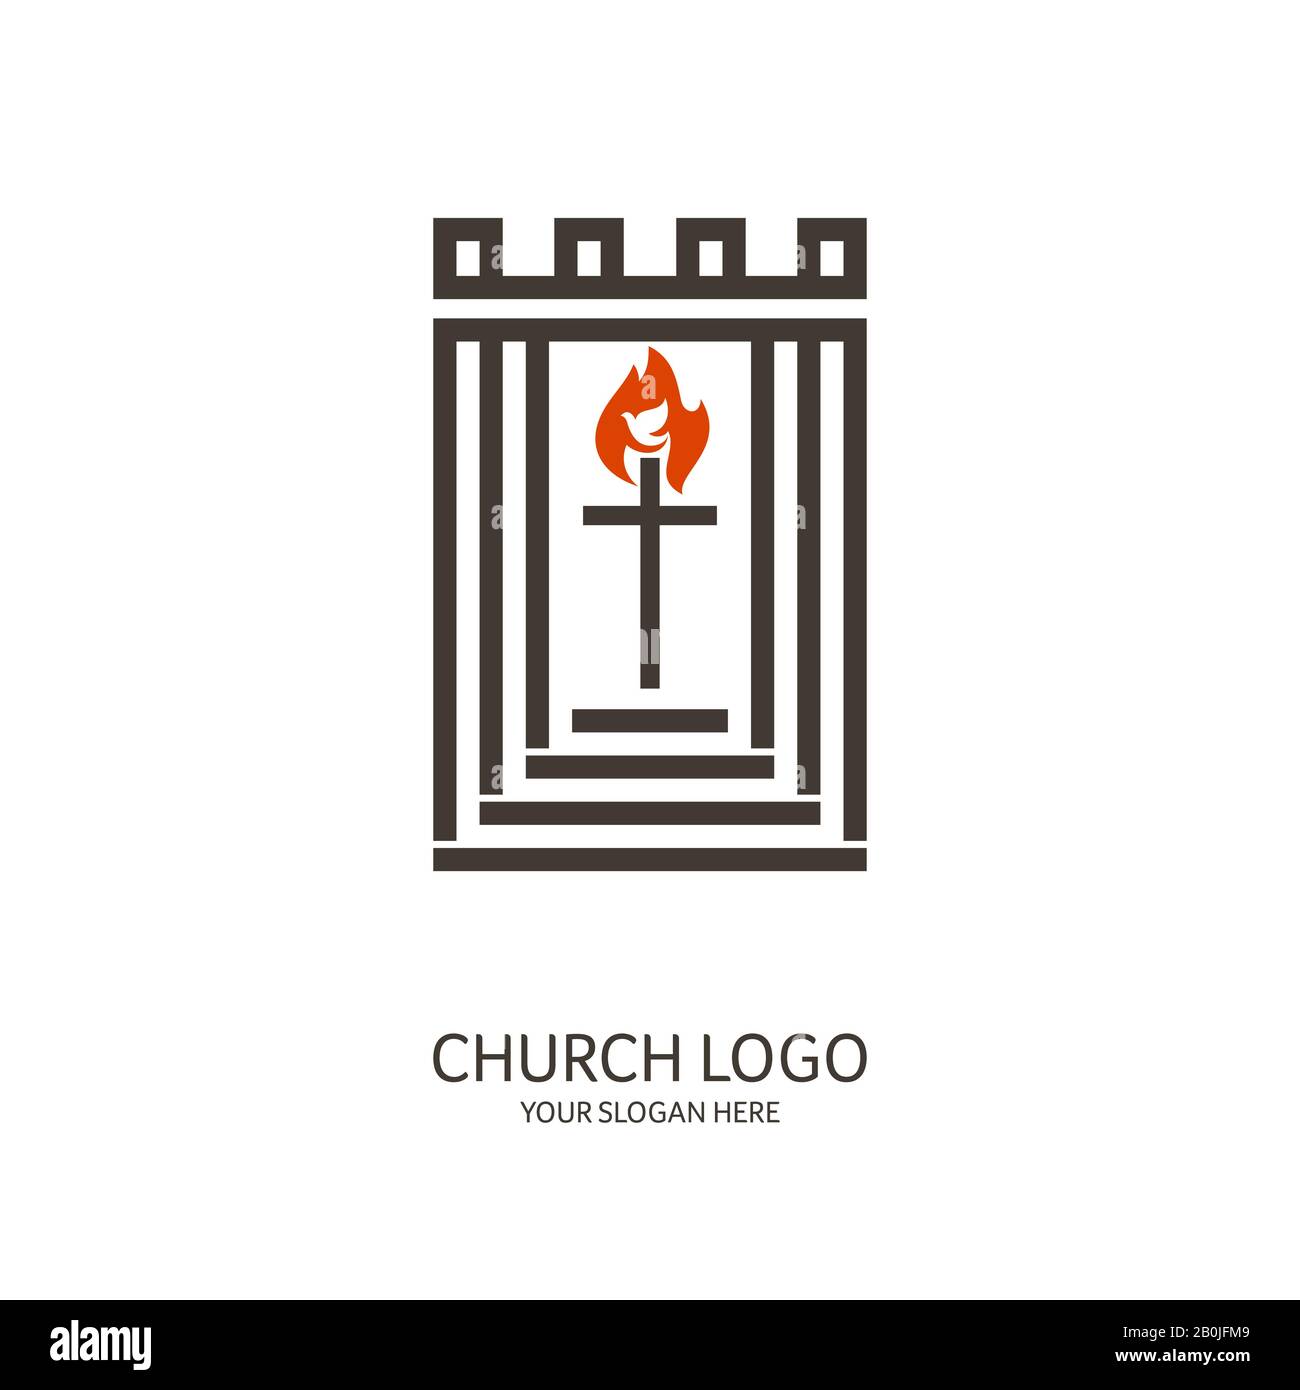 Logo de l'Église. Symboles chrétiens. La croix du Seigneur et Sauveur Jésus-Christ, la flamme du Saint-Esprit et la colombe. Illustration de Vecteur